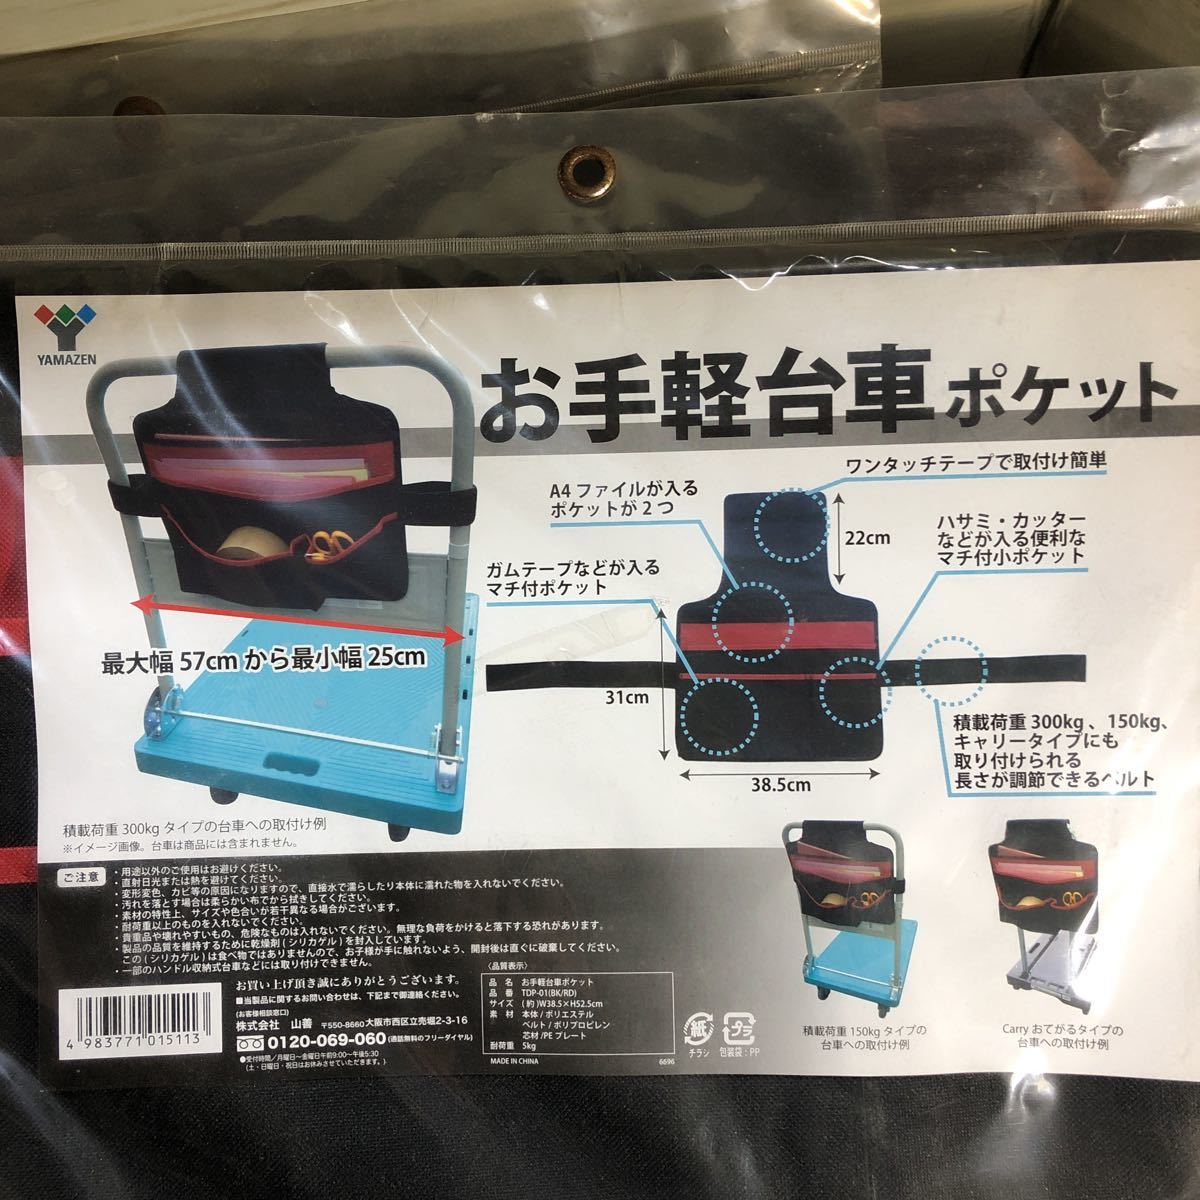 【4個セット】山善 お手軽台車ポケット ブラック TDP-01(BK/RD)